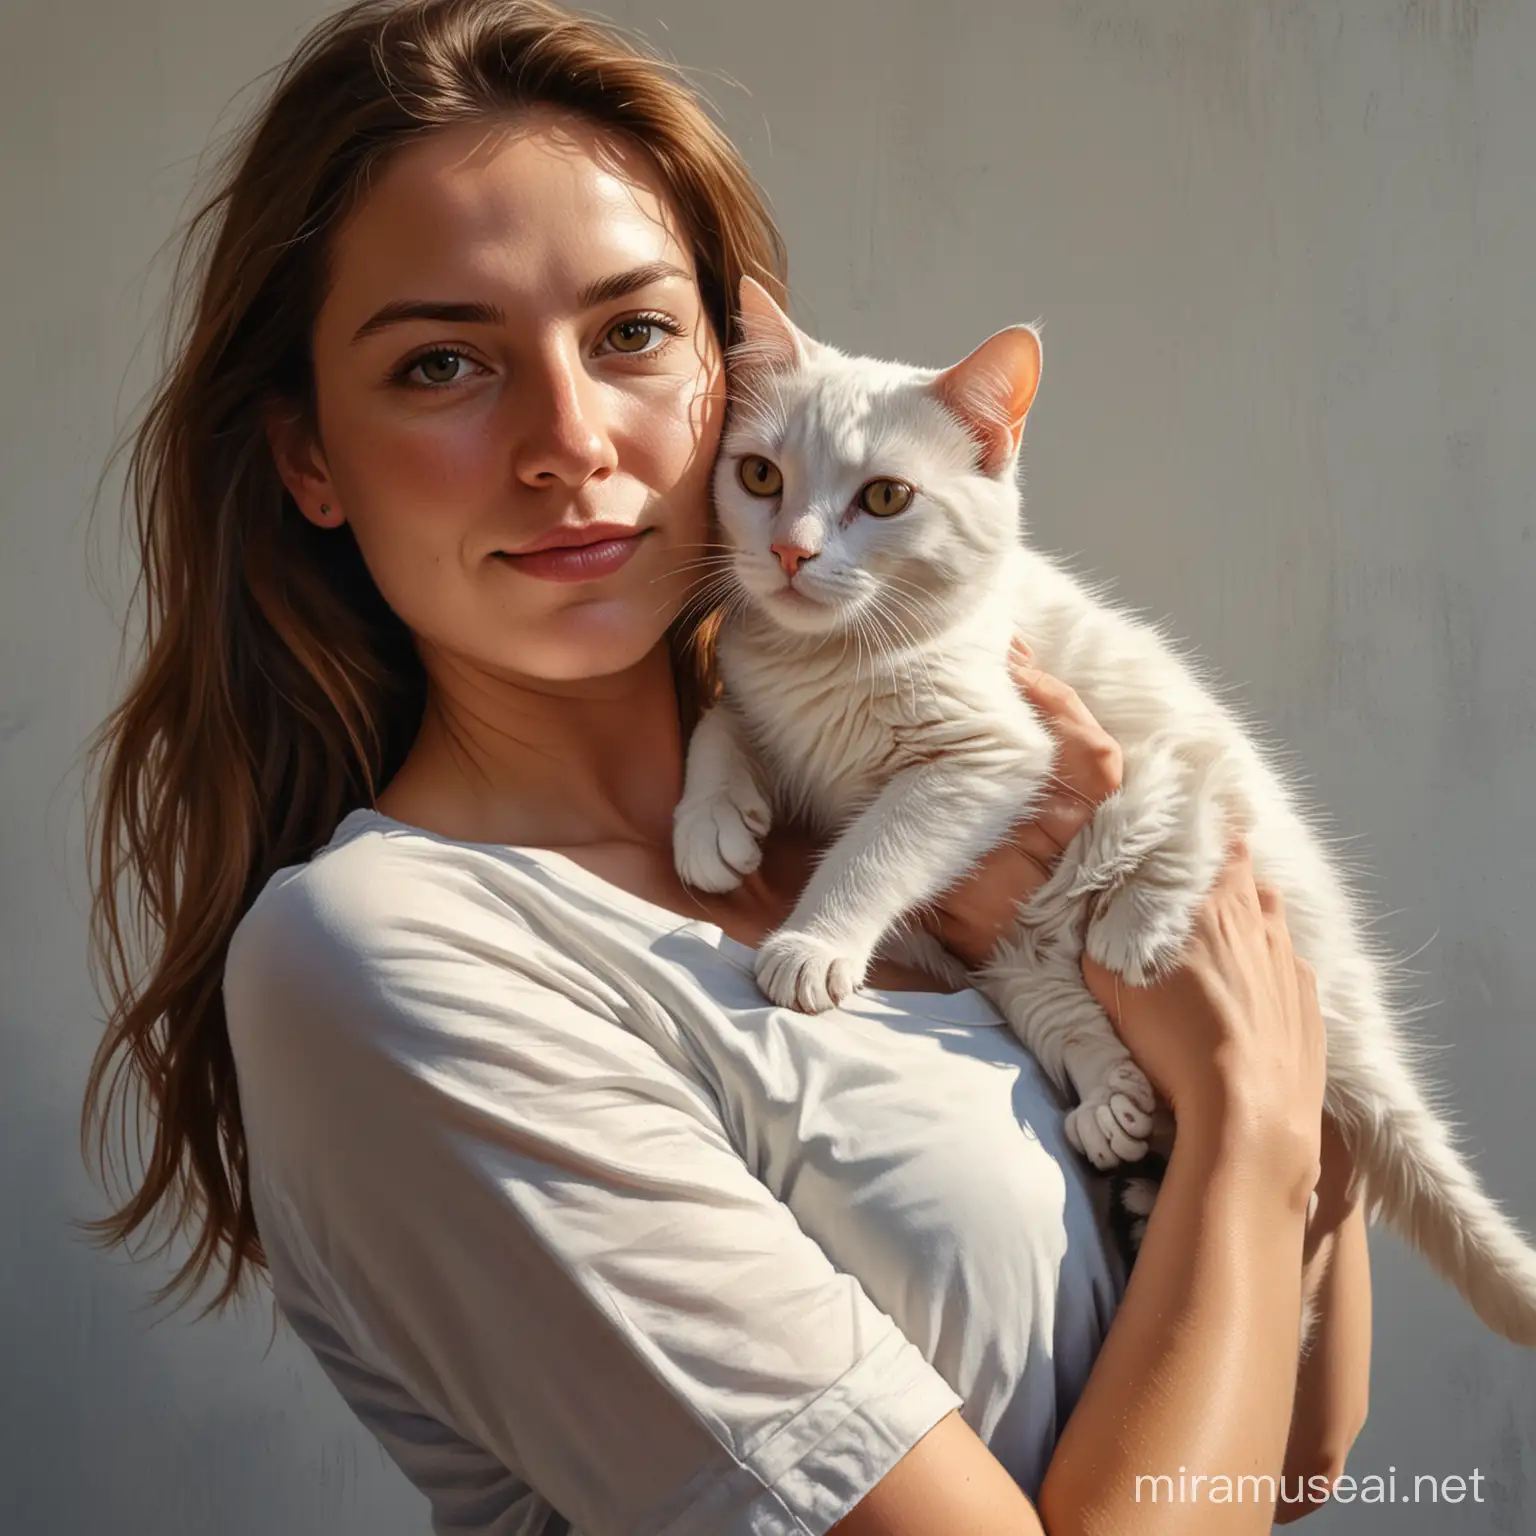 Frau mit Katze auf dem Arm, in Öl gemalt, lebendig, detailliert, Licht und Schatten